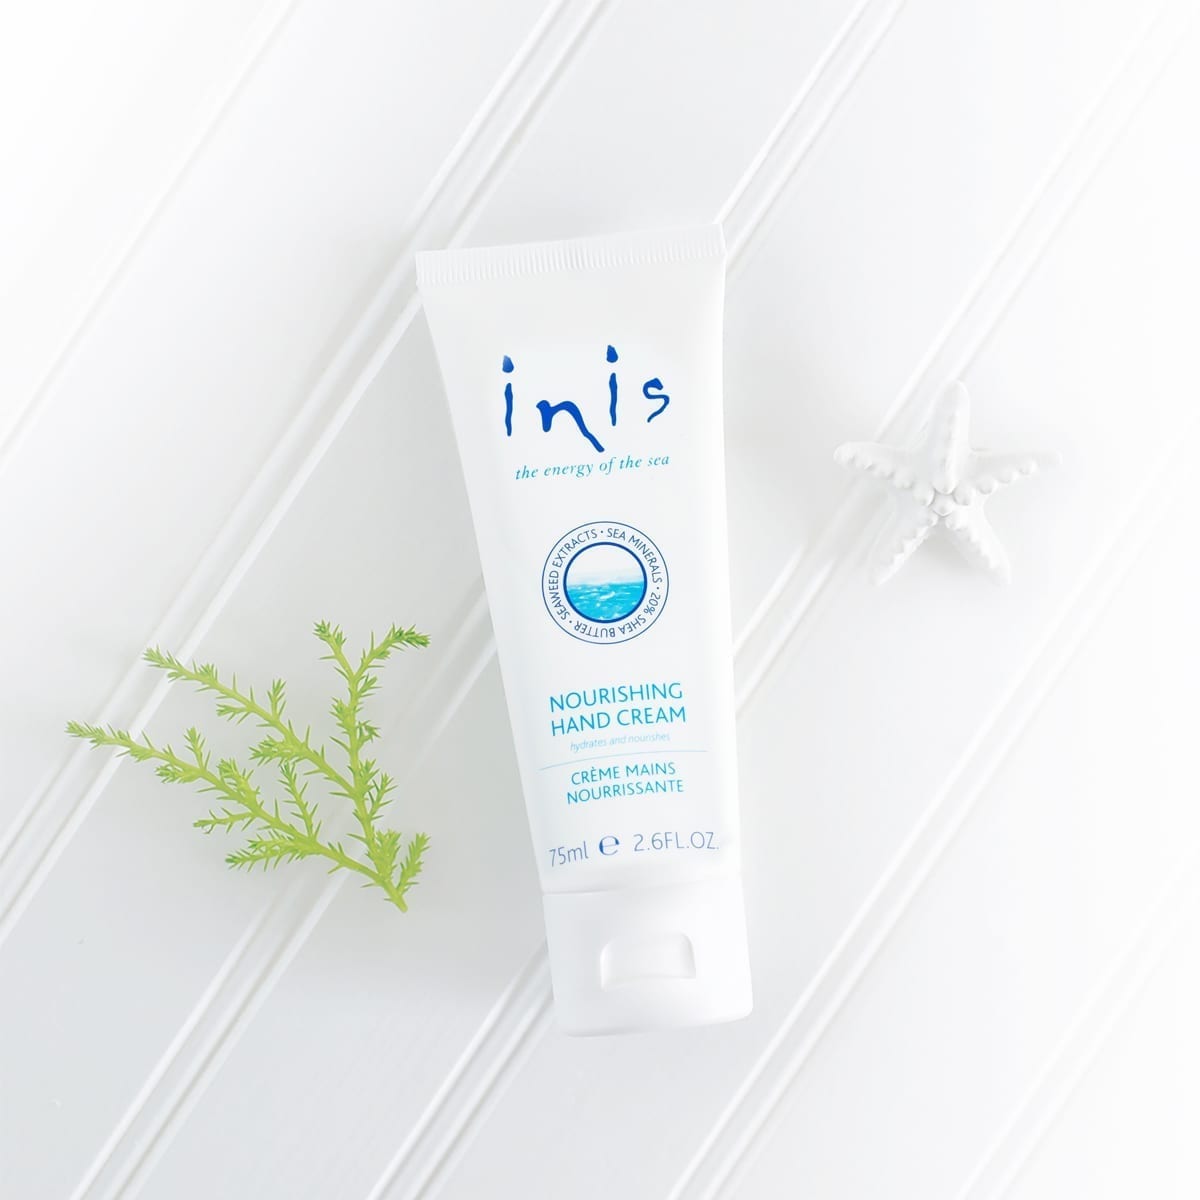 Inis Hand Cream- 2.6 fl.oz.